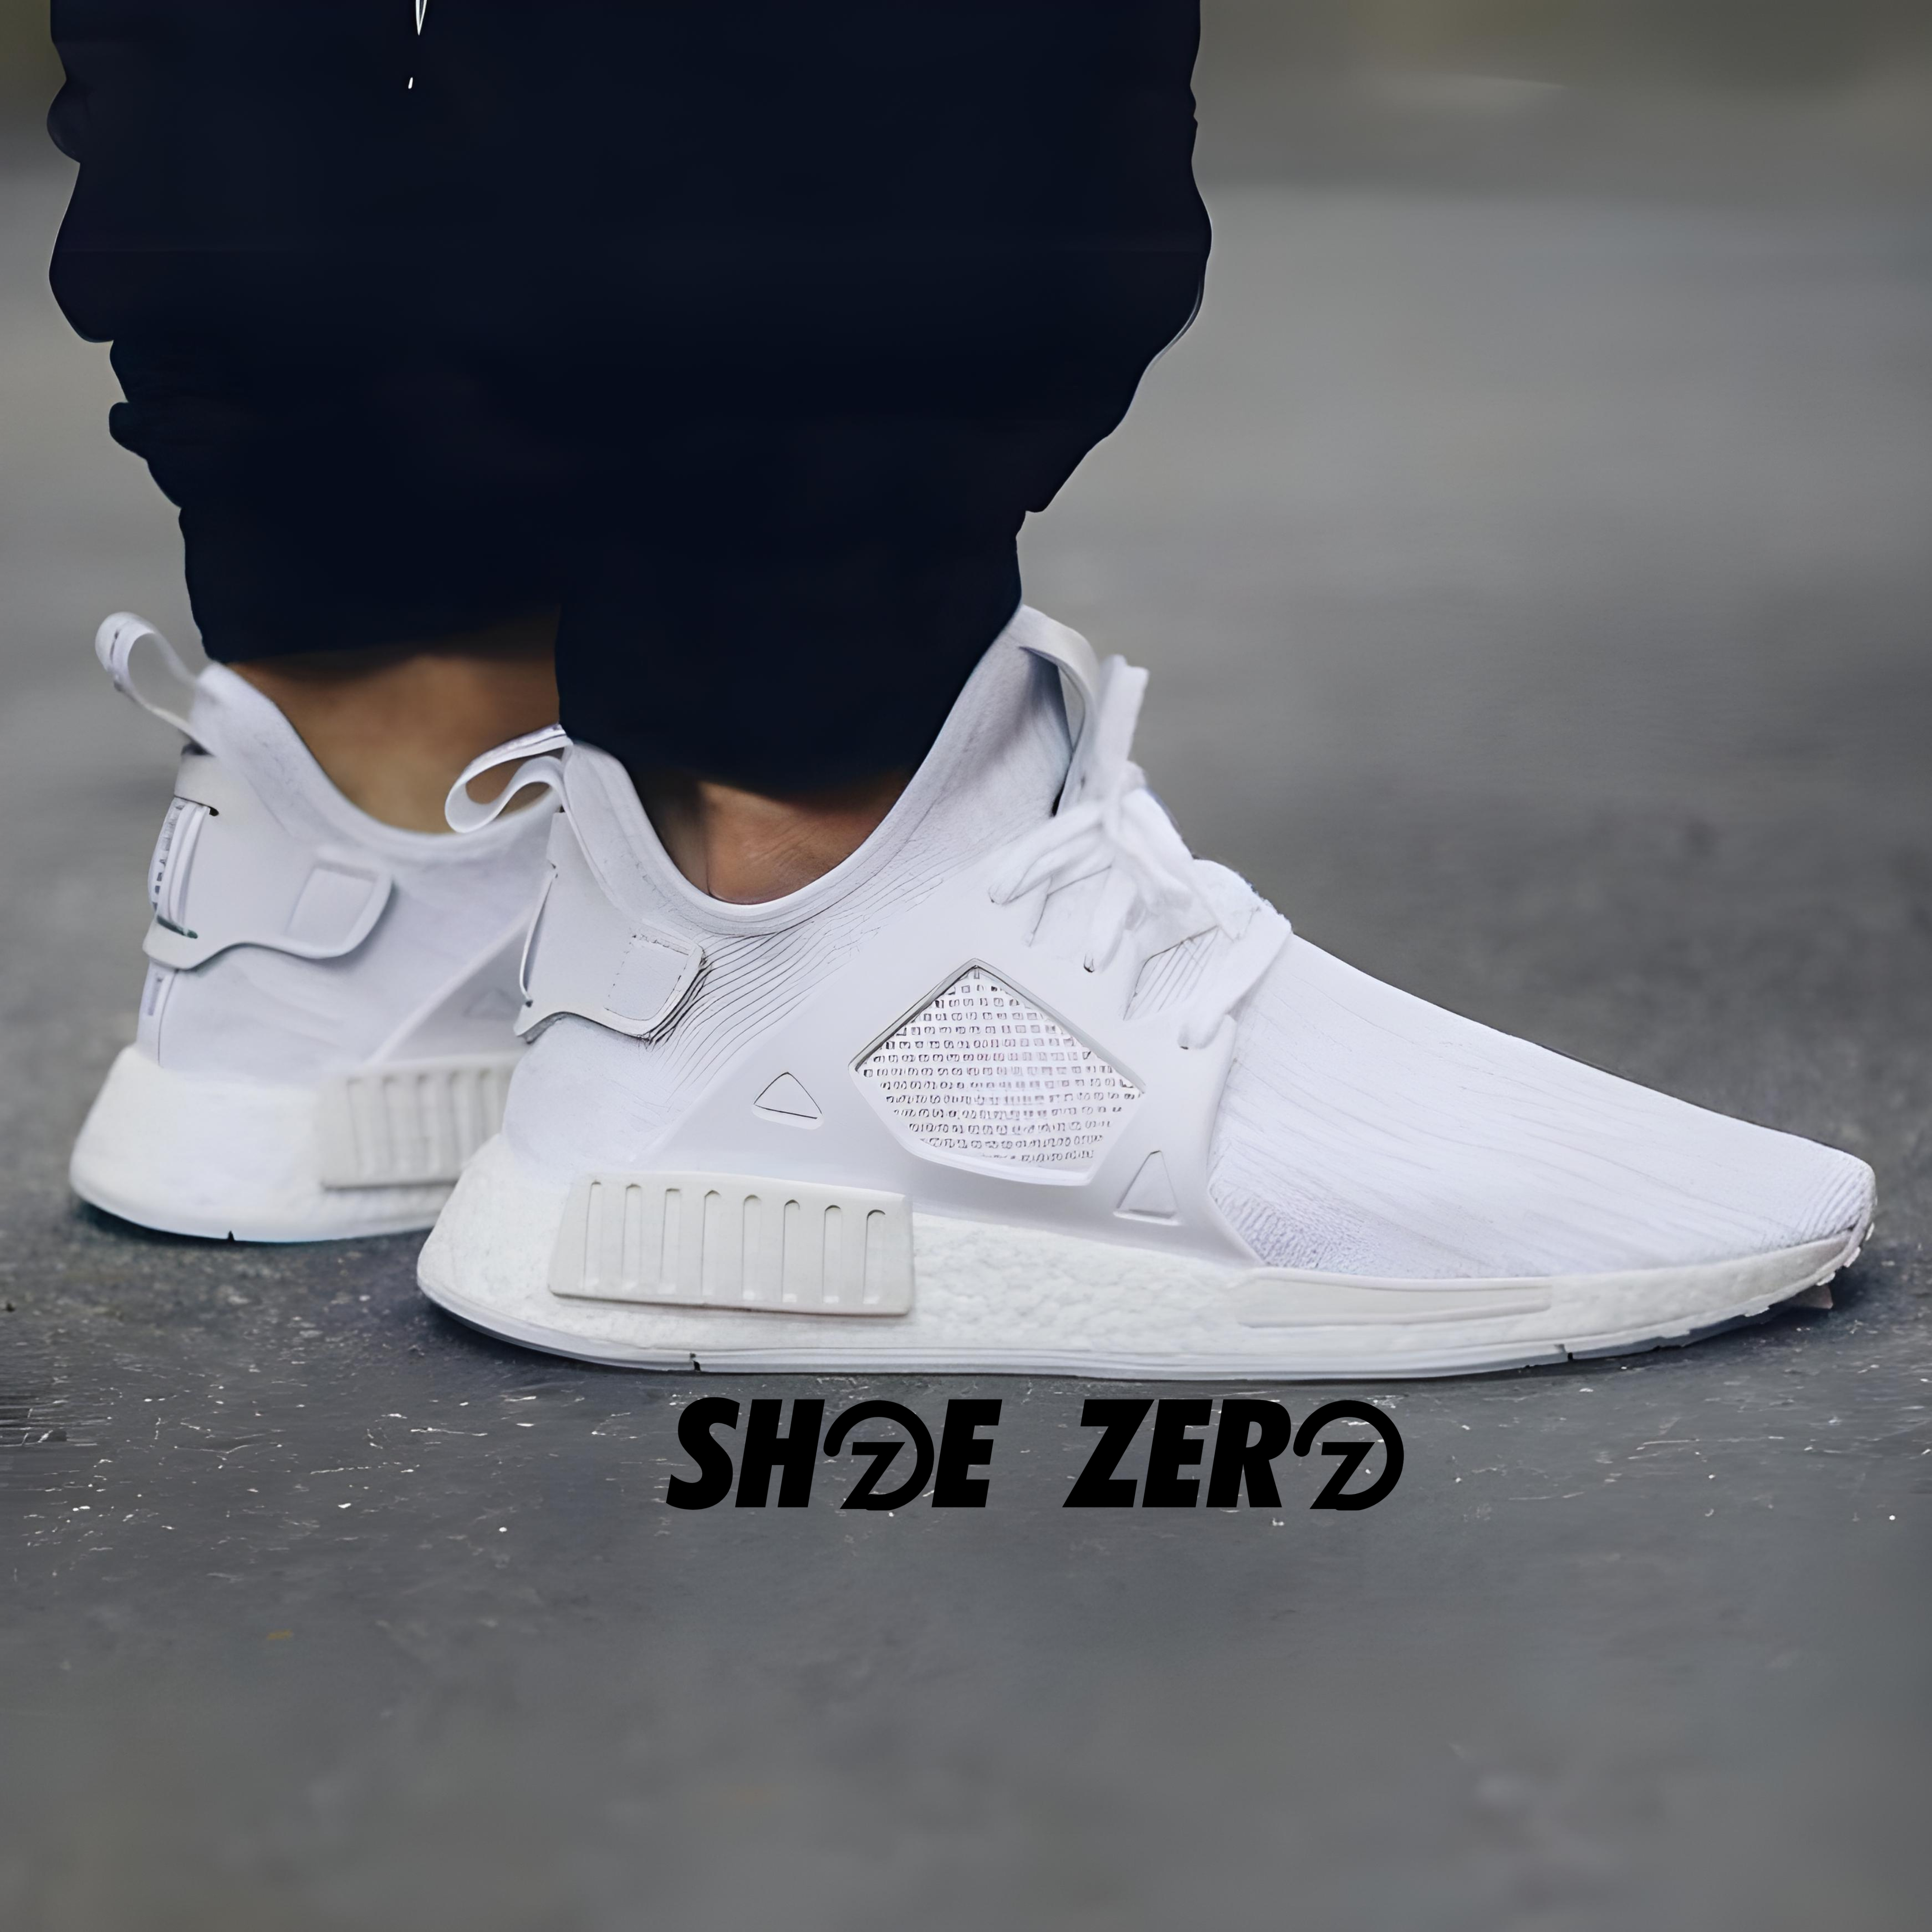 Customizable Zero Impact Foam Low Top Shoe | Shoe Zero